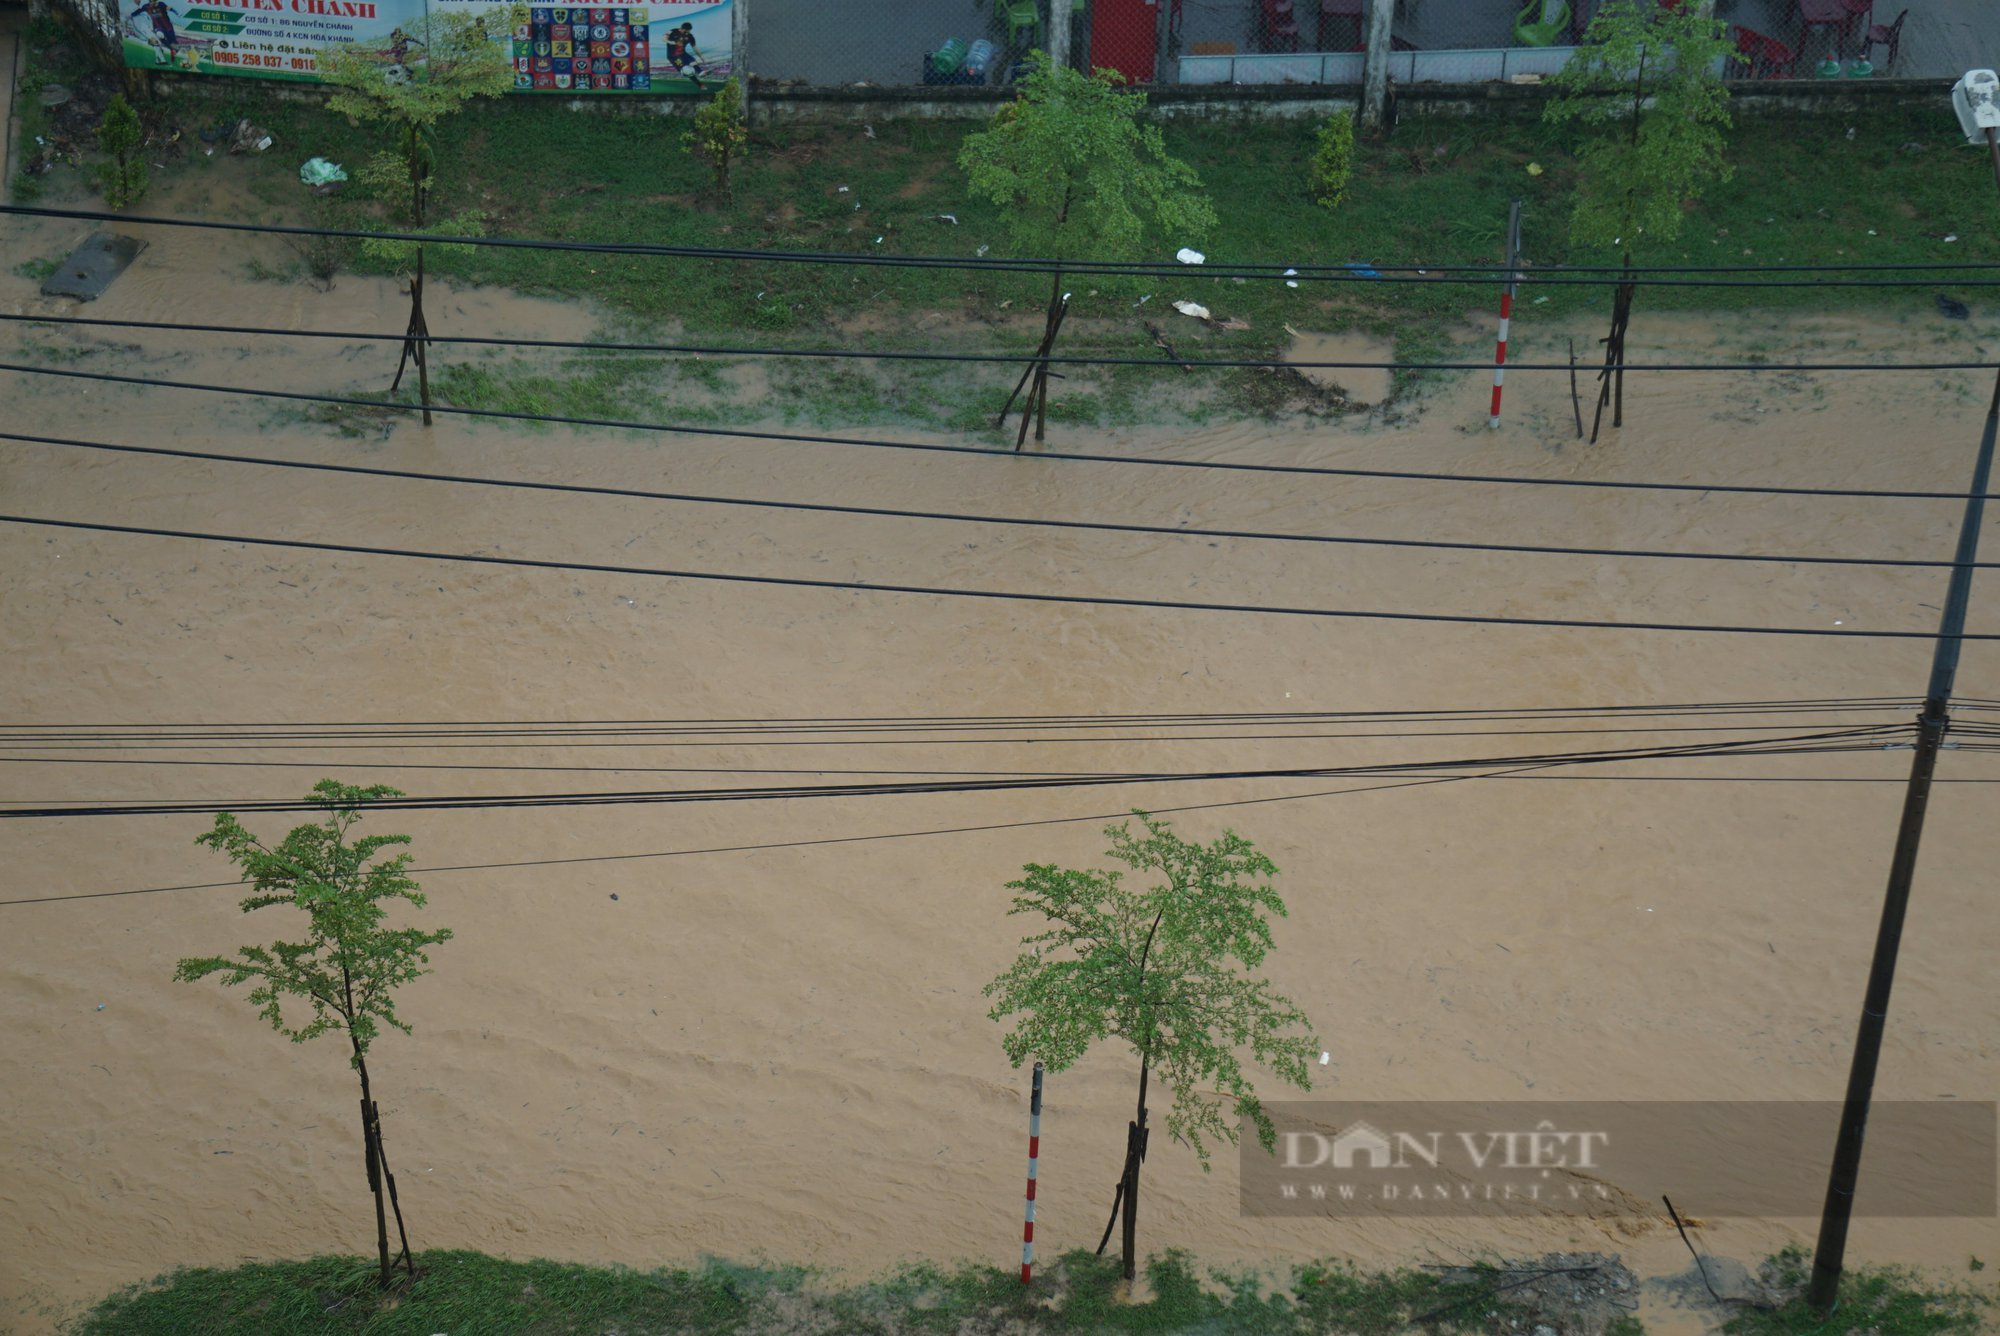 Chỉ hơn 1 tuần sau trận mưa lịch sử, Đà Nẵng lại ngập do mưa lớn - Ảnh 8.